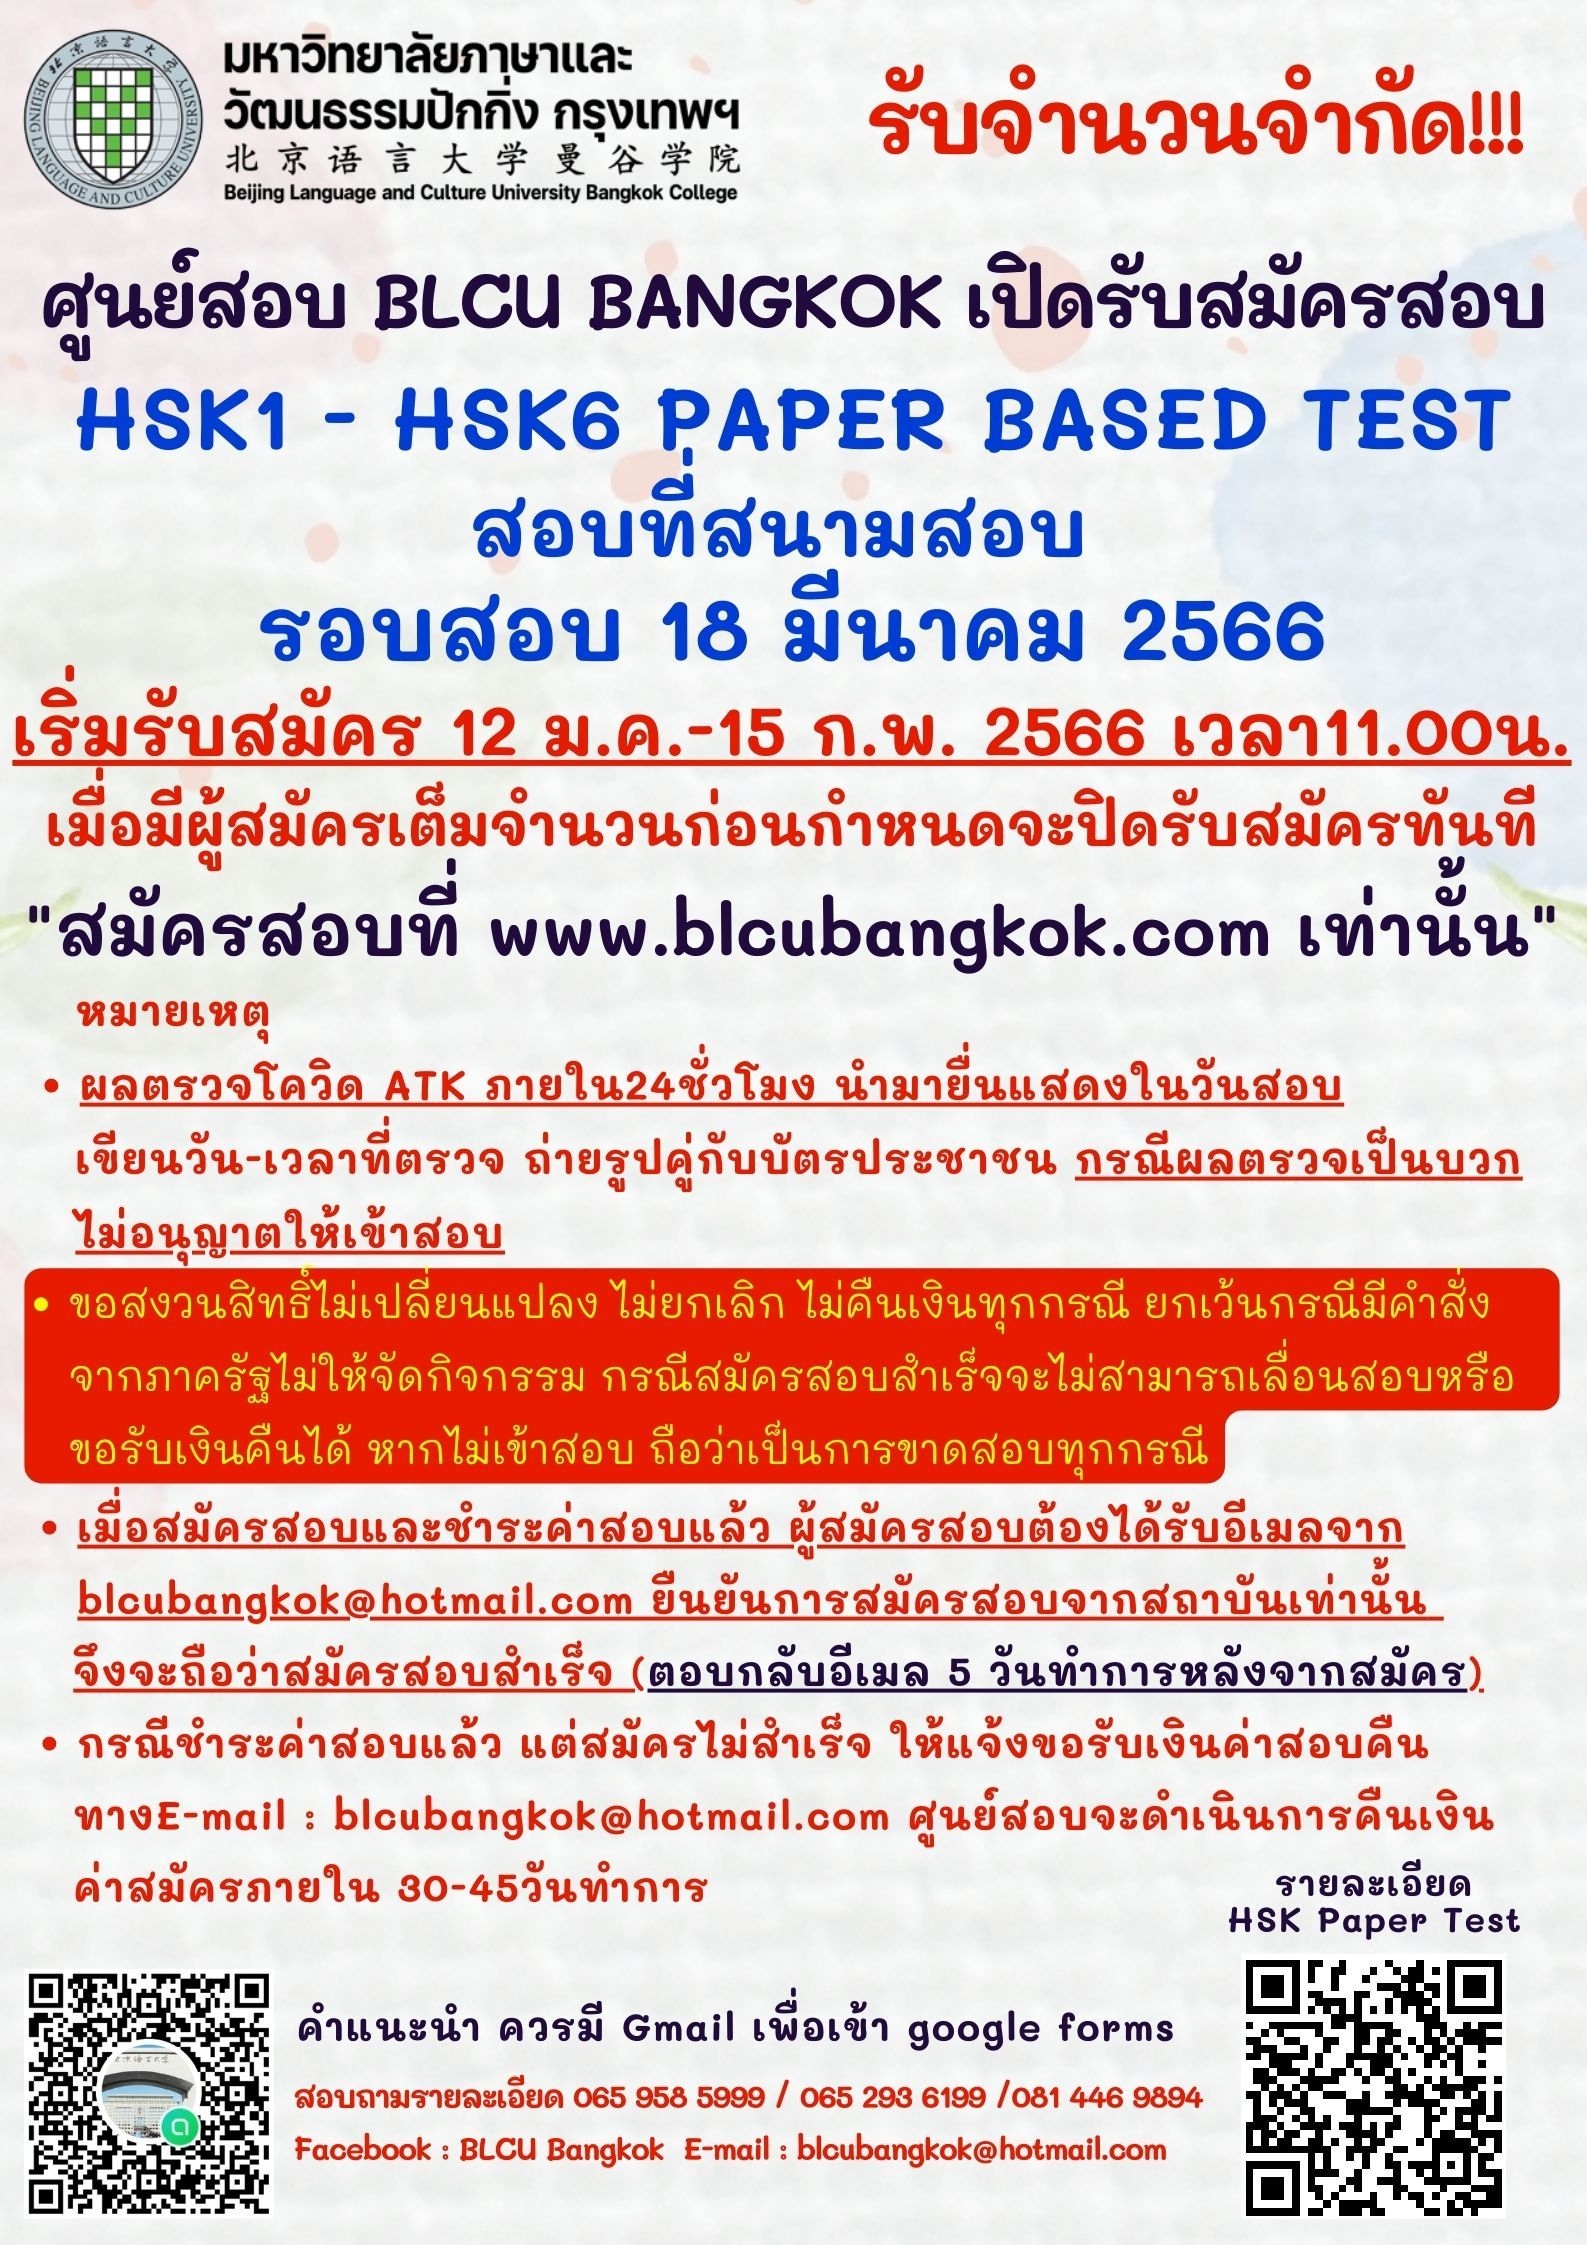 กำหนดวันสอบ HSK ครั้งที่ 2 ประจำปี 2566 วันเสาร์ที่ 18 มีนาคม 2566 (Paper based test สอบที่สนามสอบ)